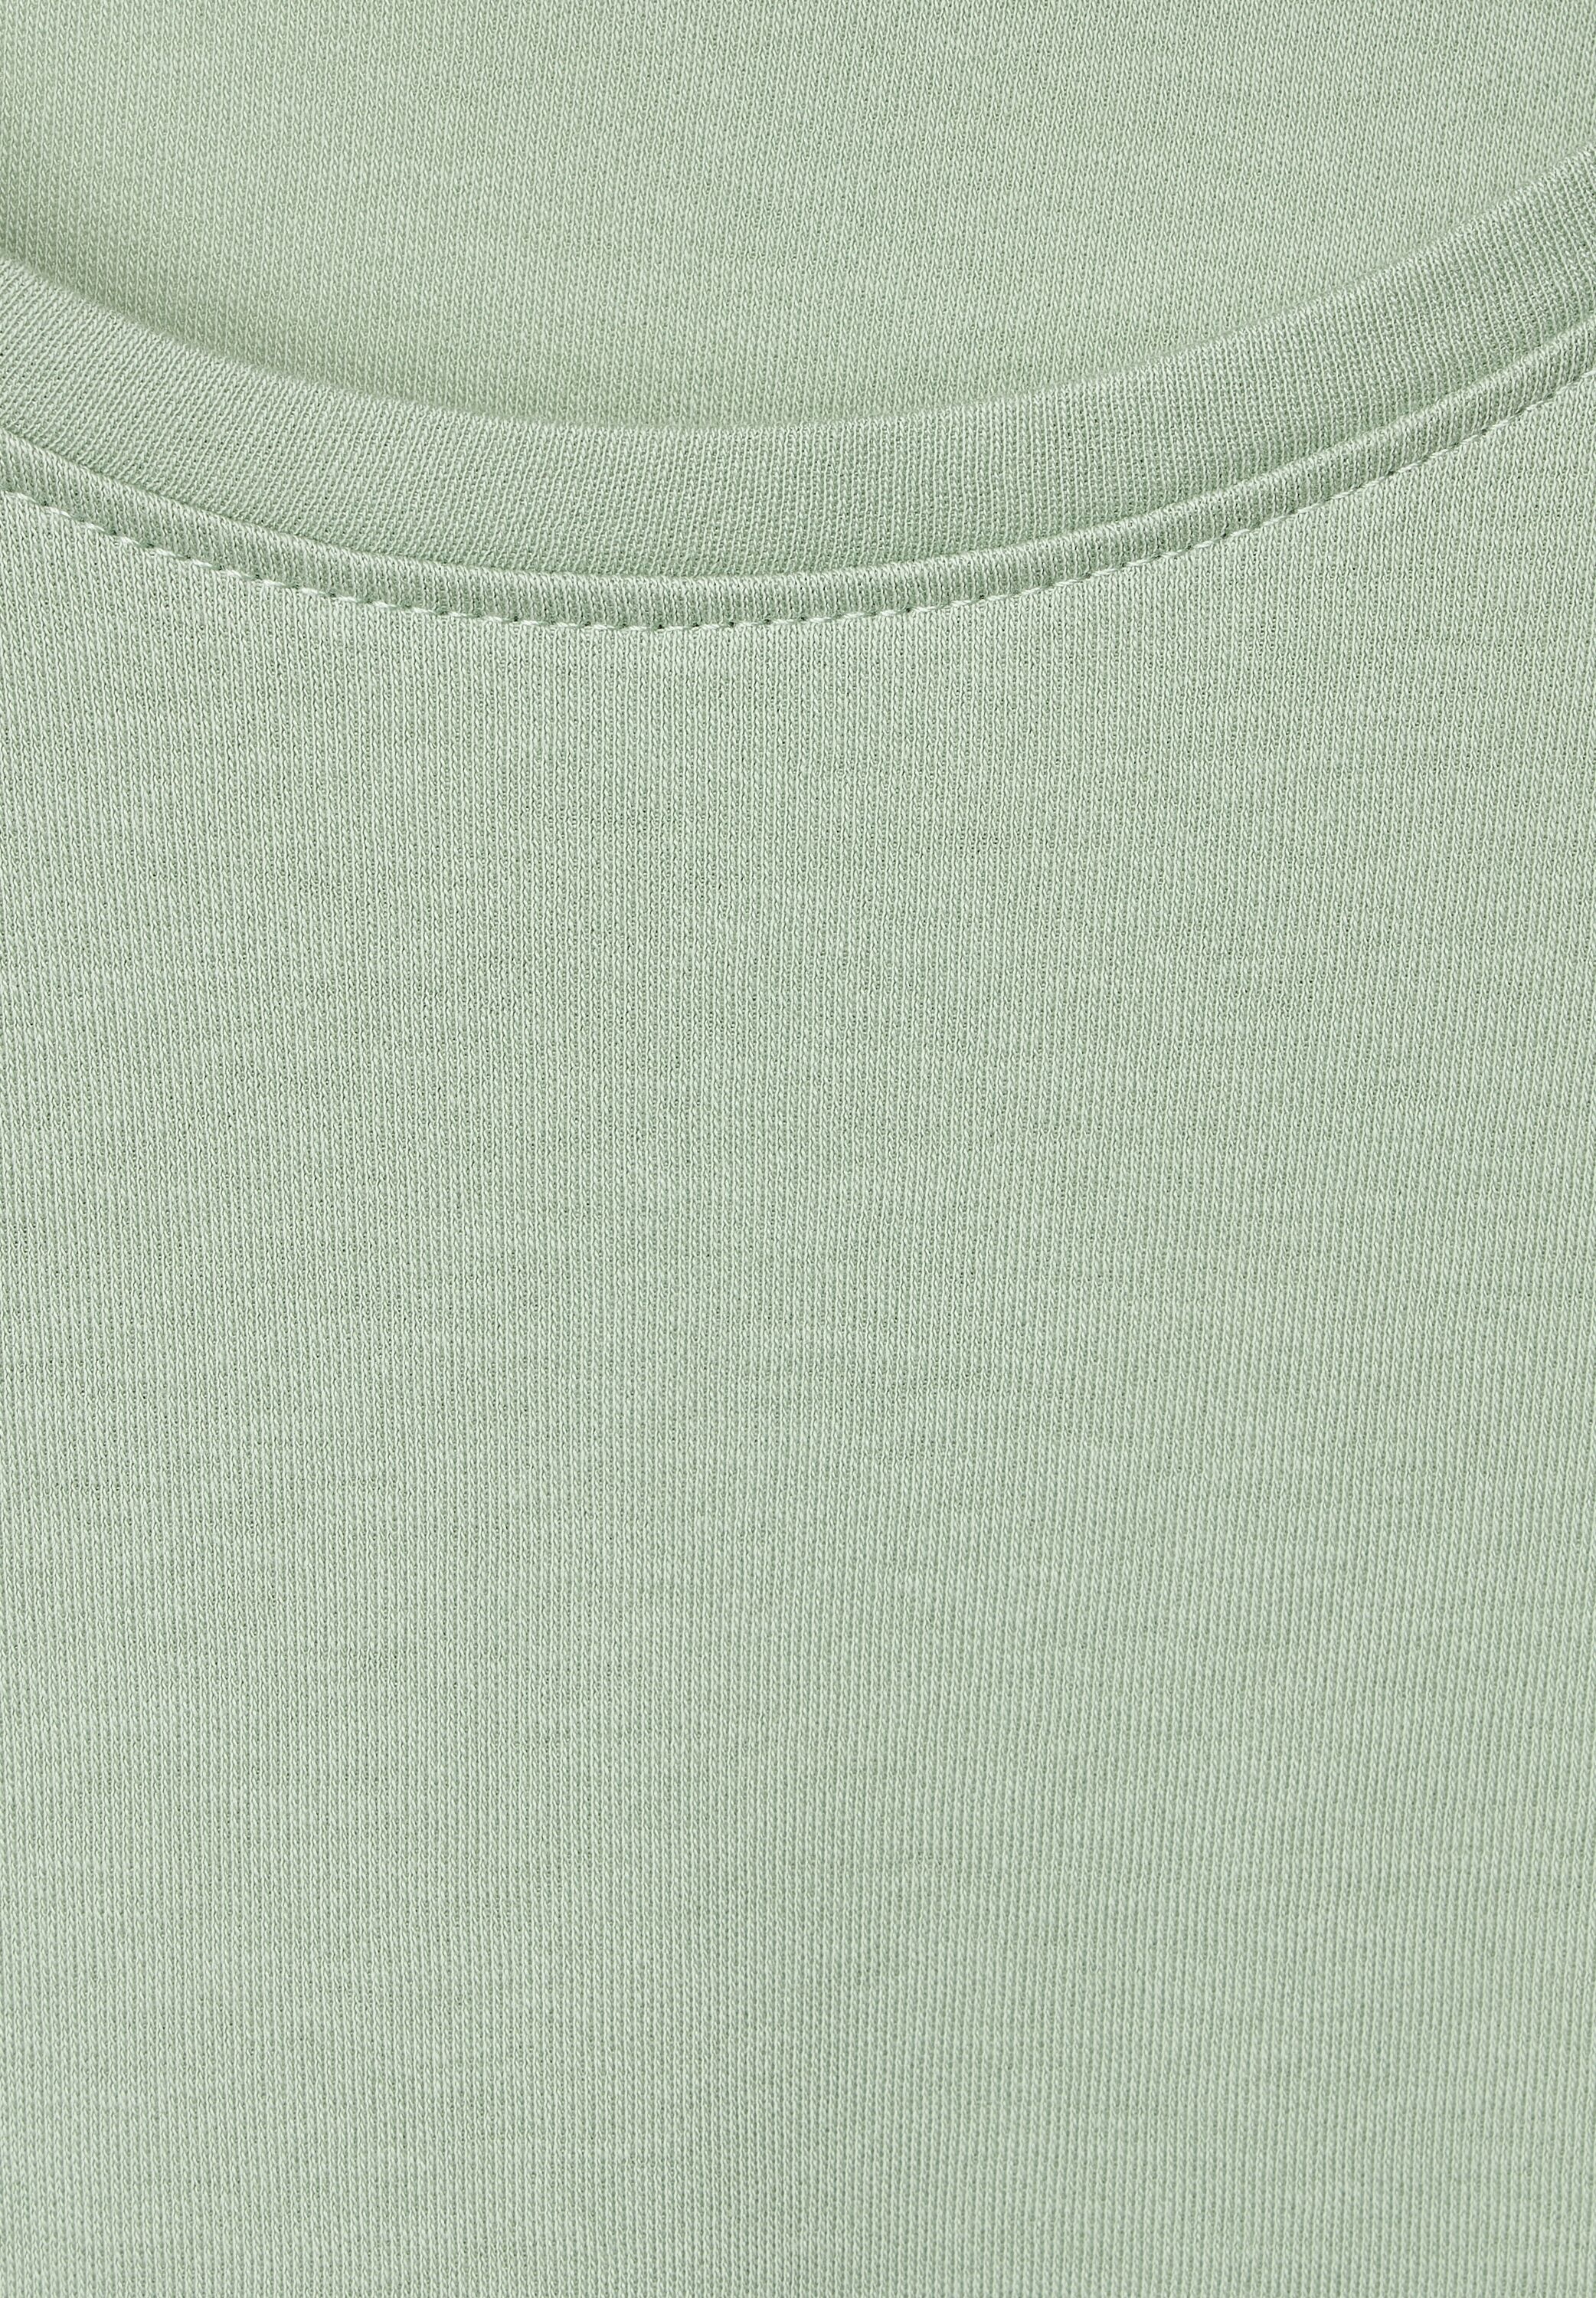 Cecil 3/4-Arm-Shirt, aus reiner Baumwolle online